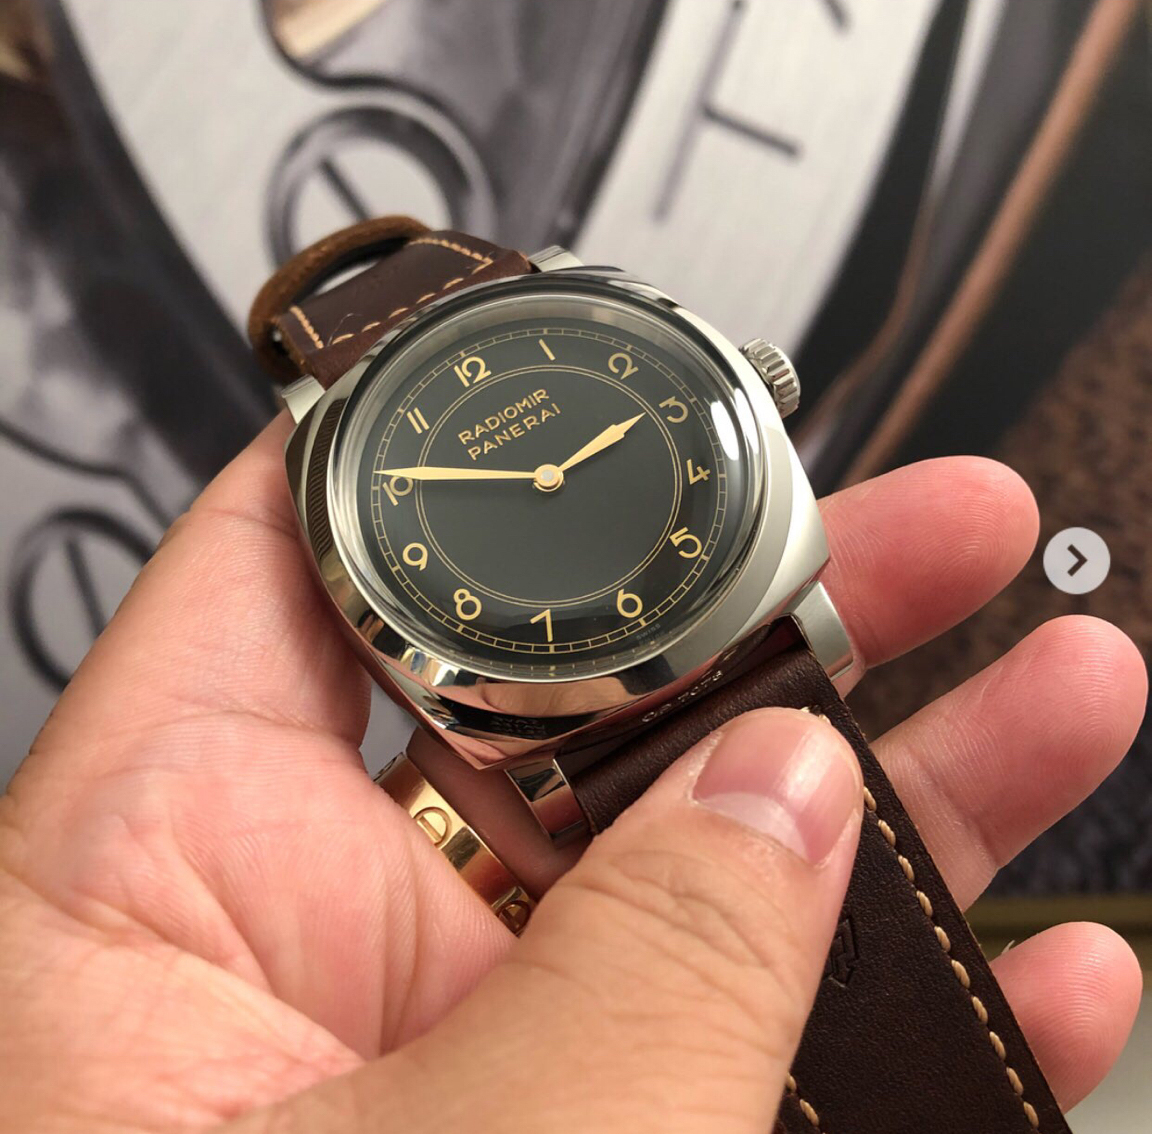 パネライ カリフォルニアダイヤル オマージュウォッチ - メンズ腕時計